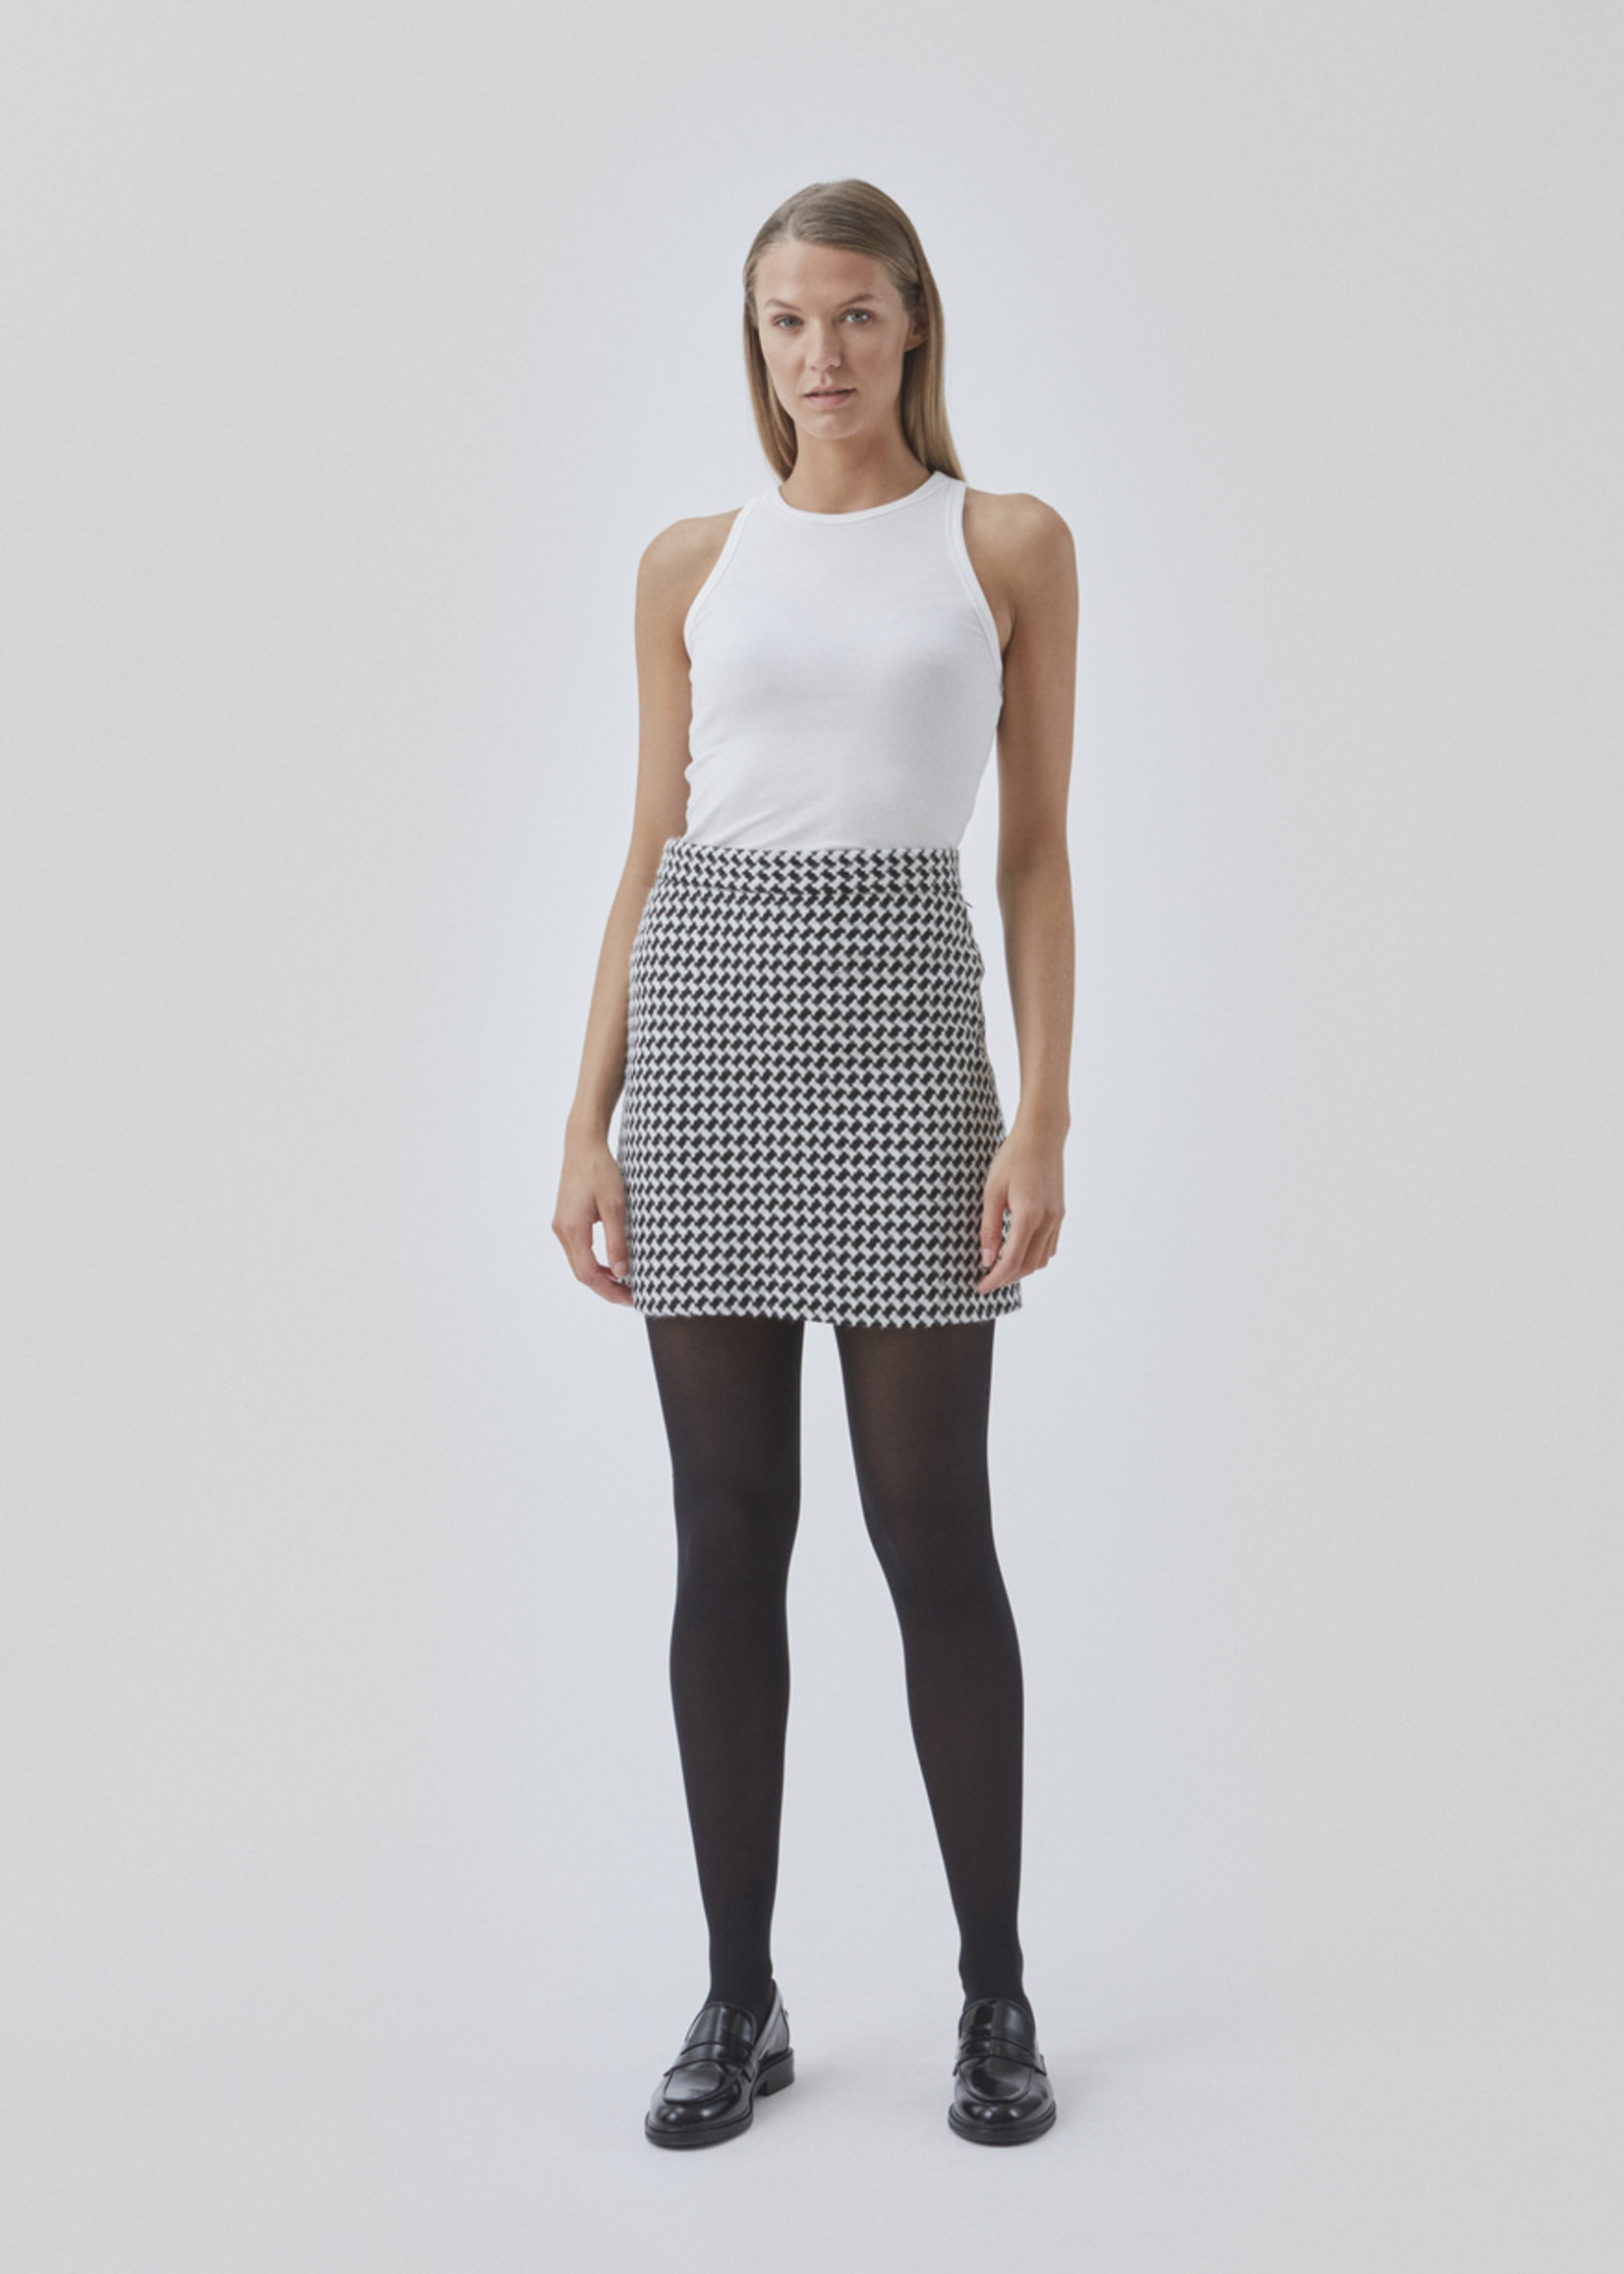 Modstrom Badia Skirt Black White Check